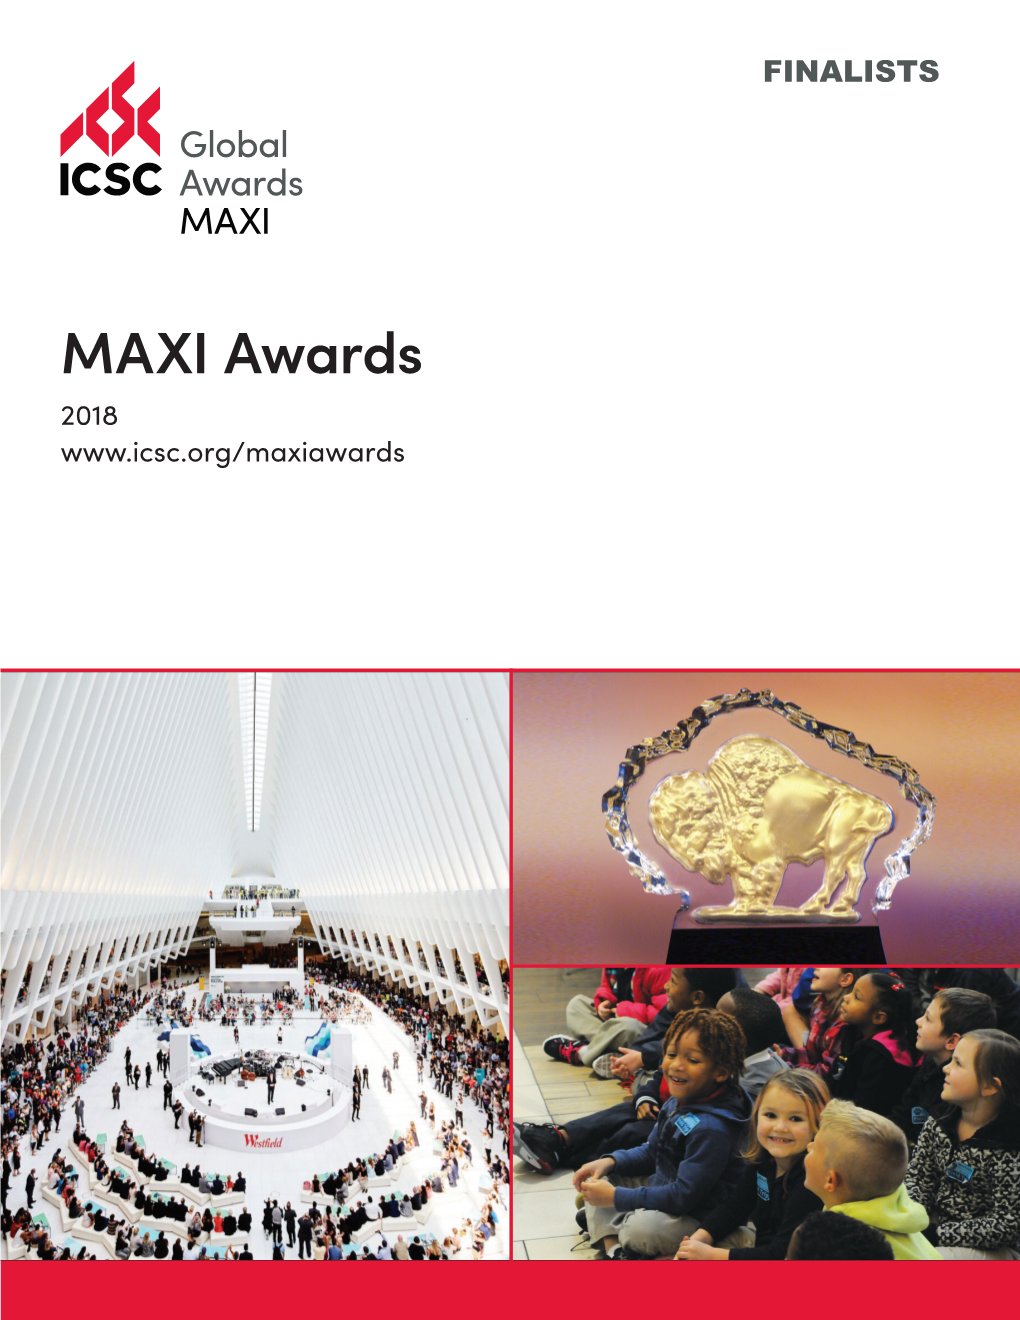 MAXI Awards 2018 2018 MAXI AWARDS FINALISTS